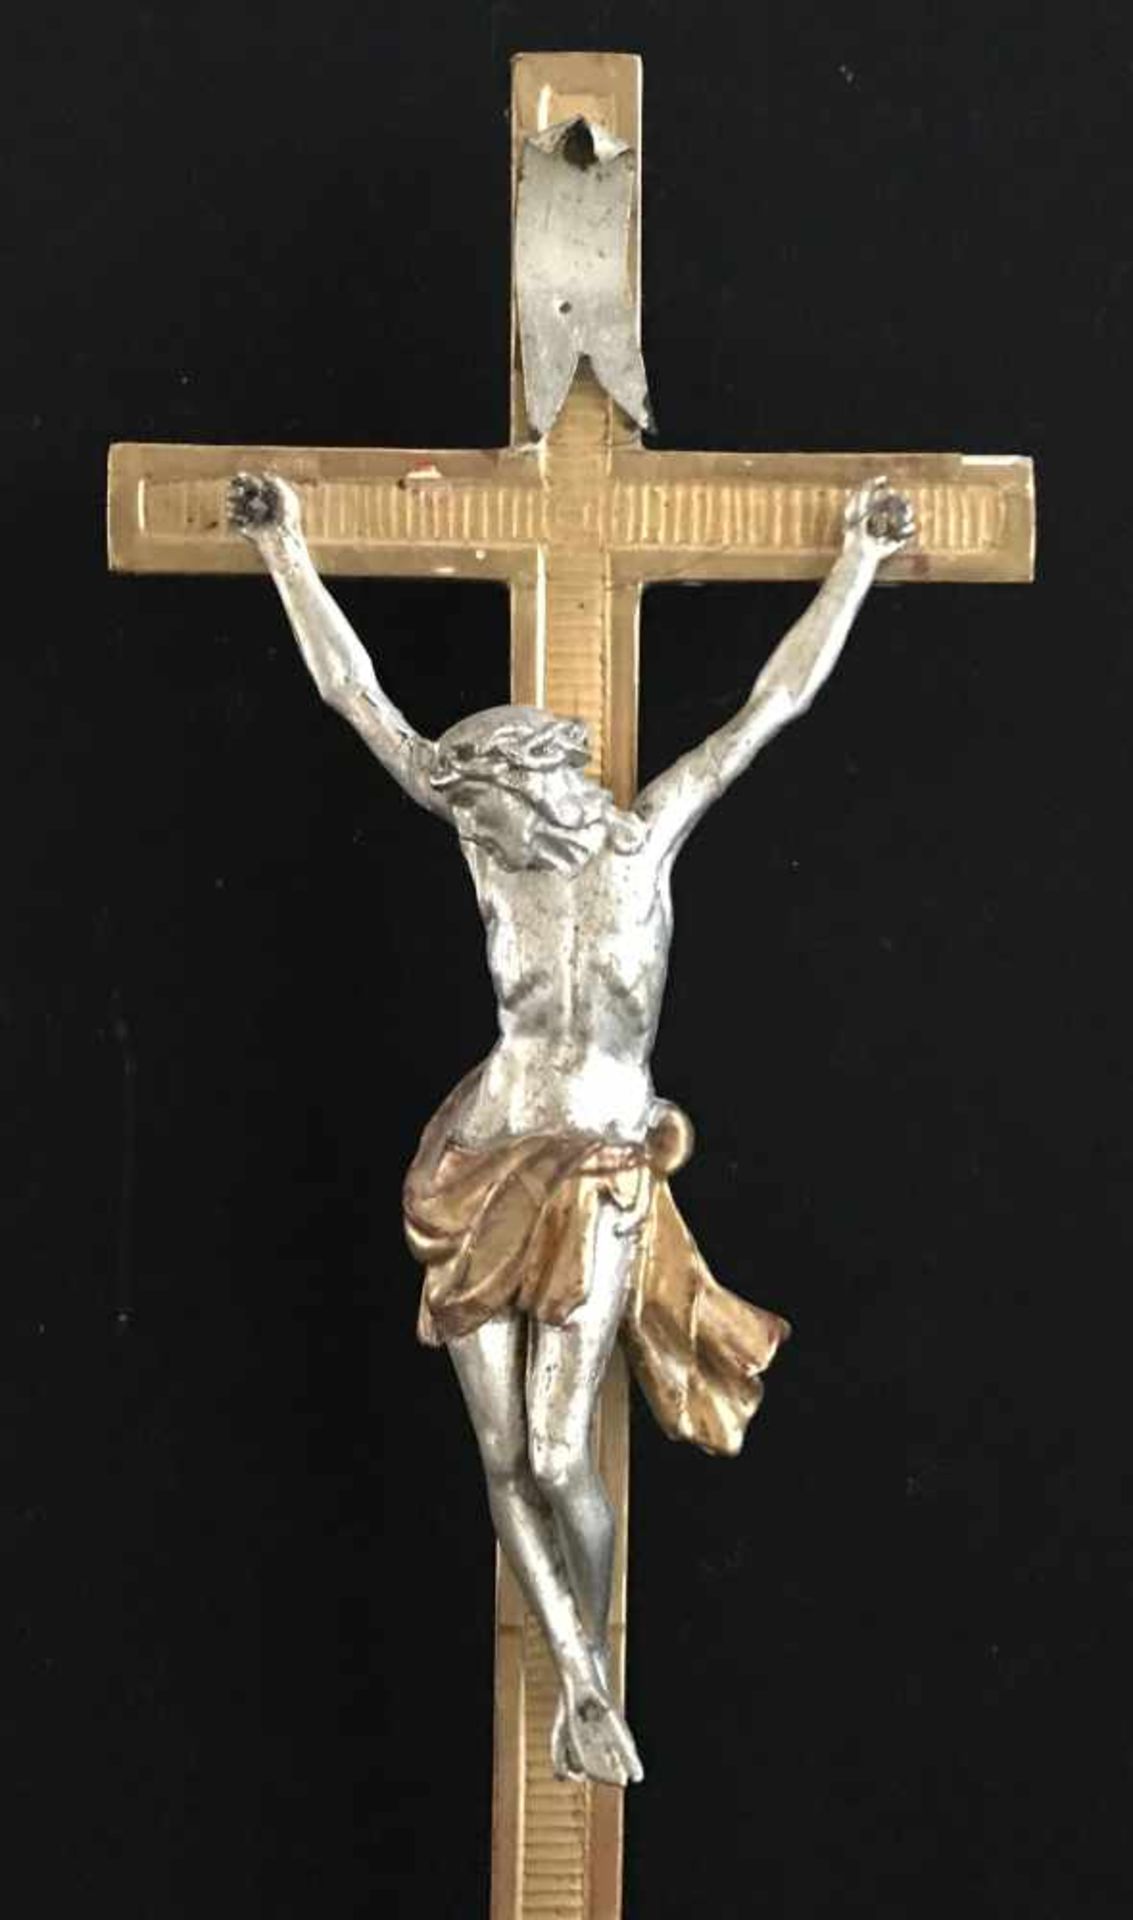 Standkreuz bzw. Kruzifix, um 1810, mit Christus im Dreinageltypus, H.75 cm. - Bild 3 aus 3